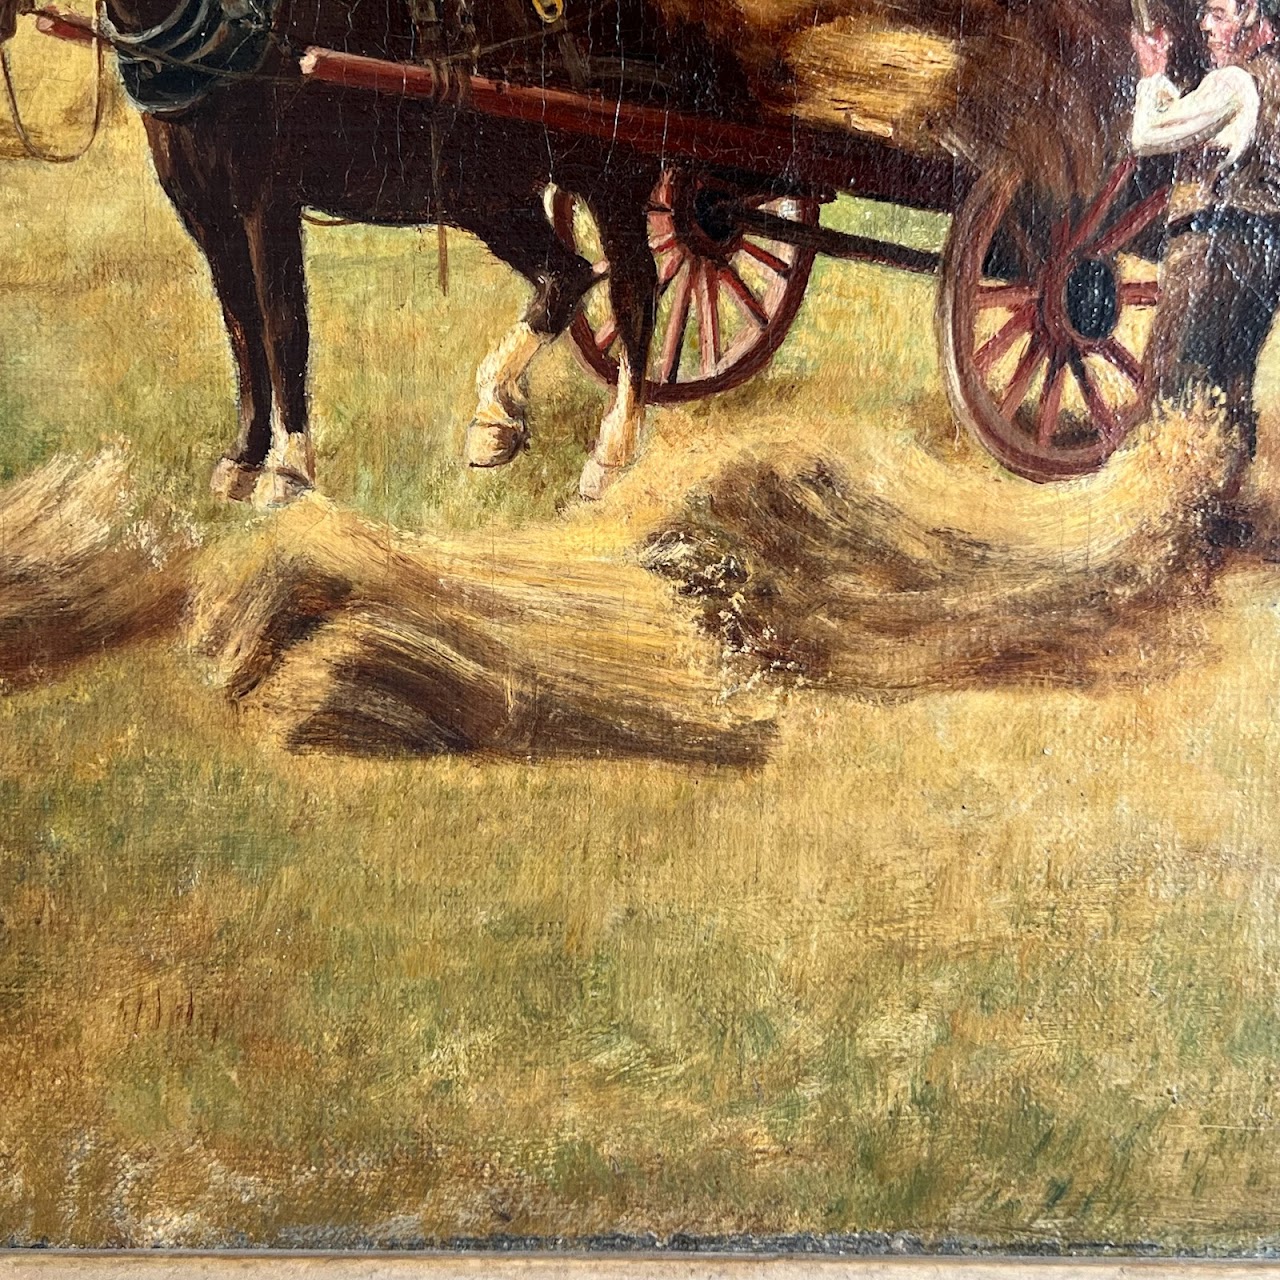 Alexander Johnston 19th C. Harvest Scene Signed Oil Painting